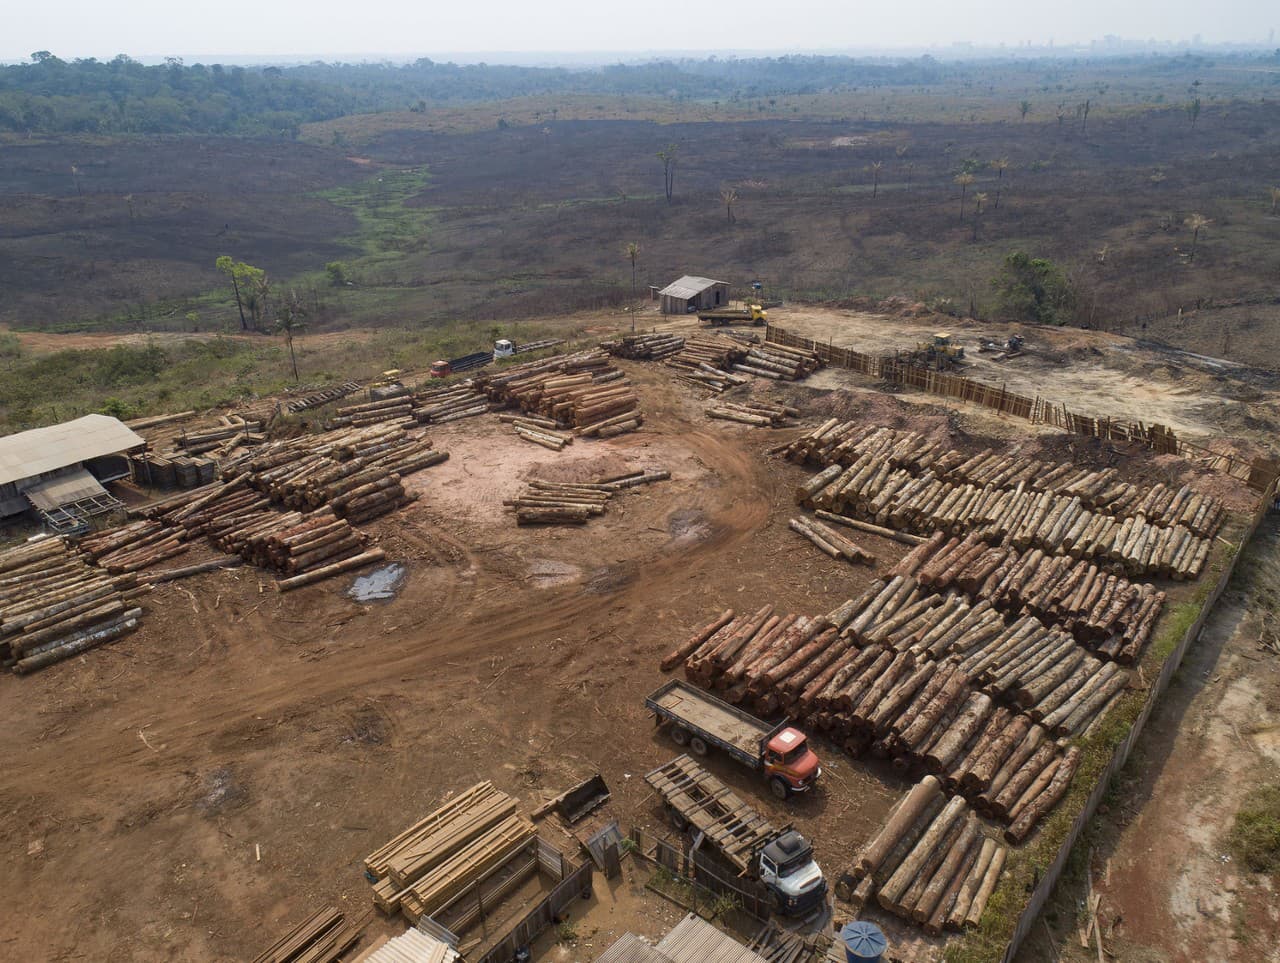 Miera odlesňovania v Amazonskom pralese narástla